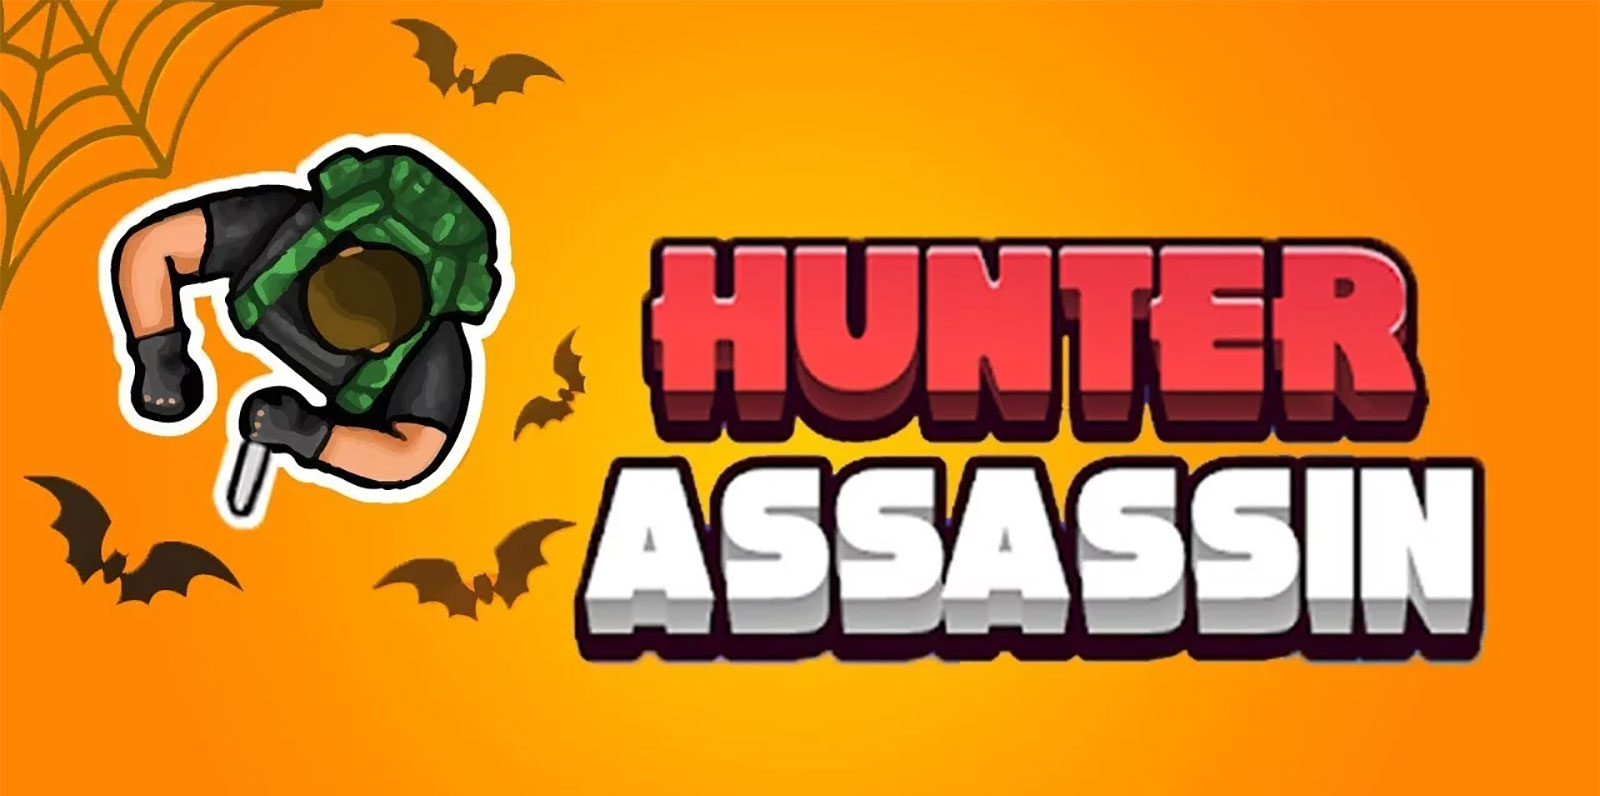 Hunter Assassin Mod Apk